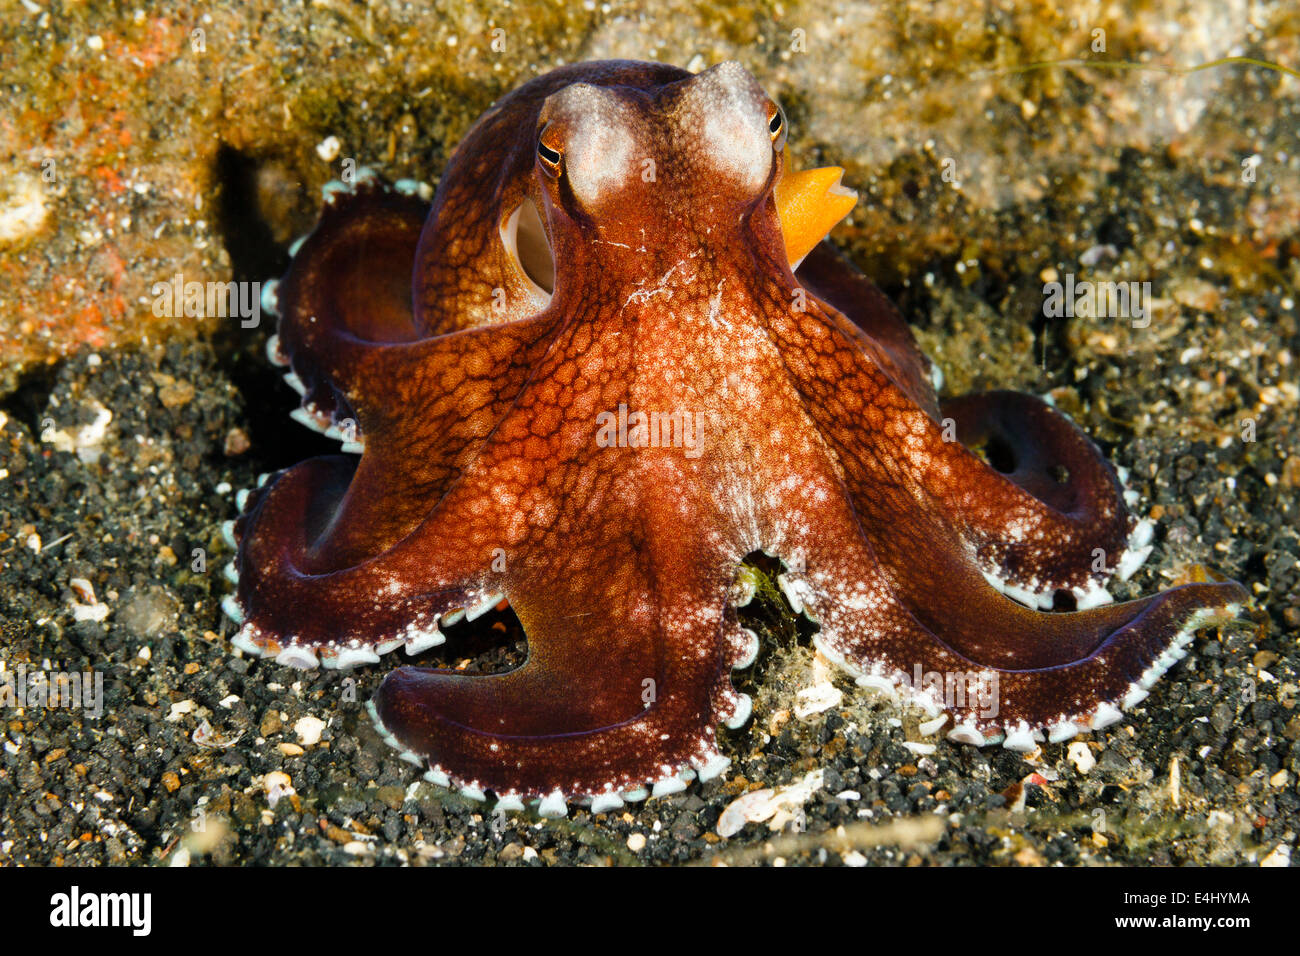 Coconut octopus (Amphioctopus marginatus) Lembeh Strait, Indonesia Stock Photo